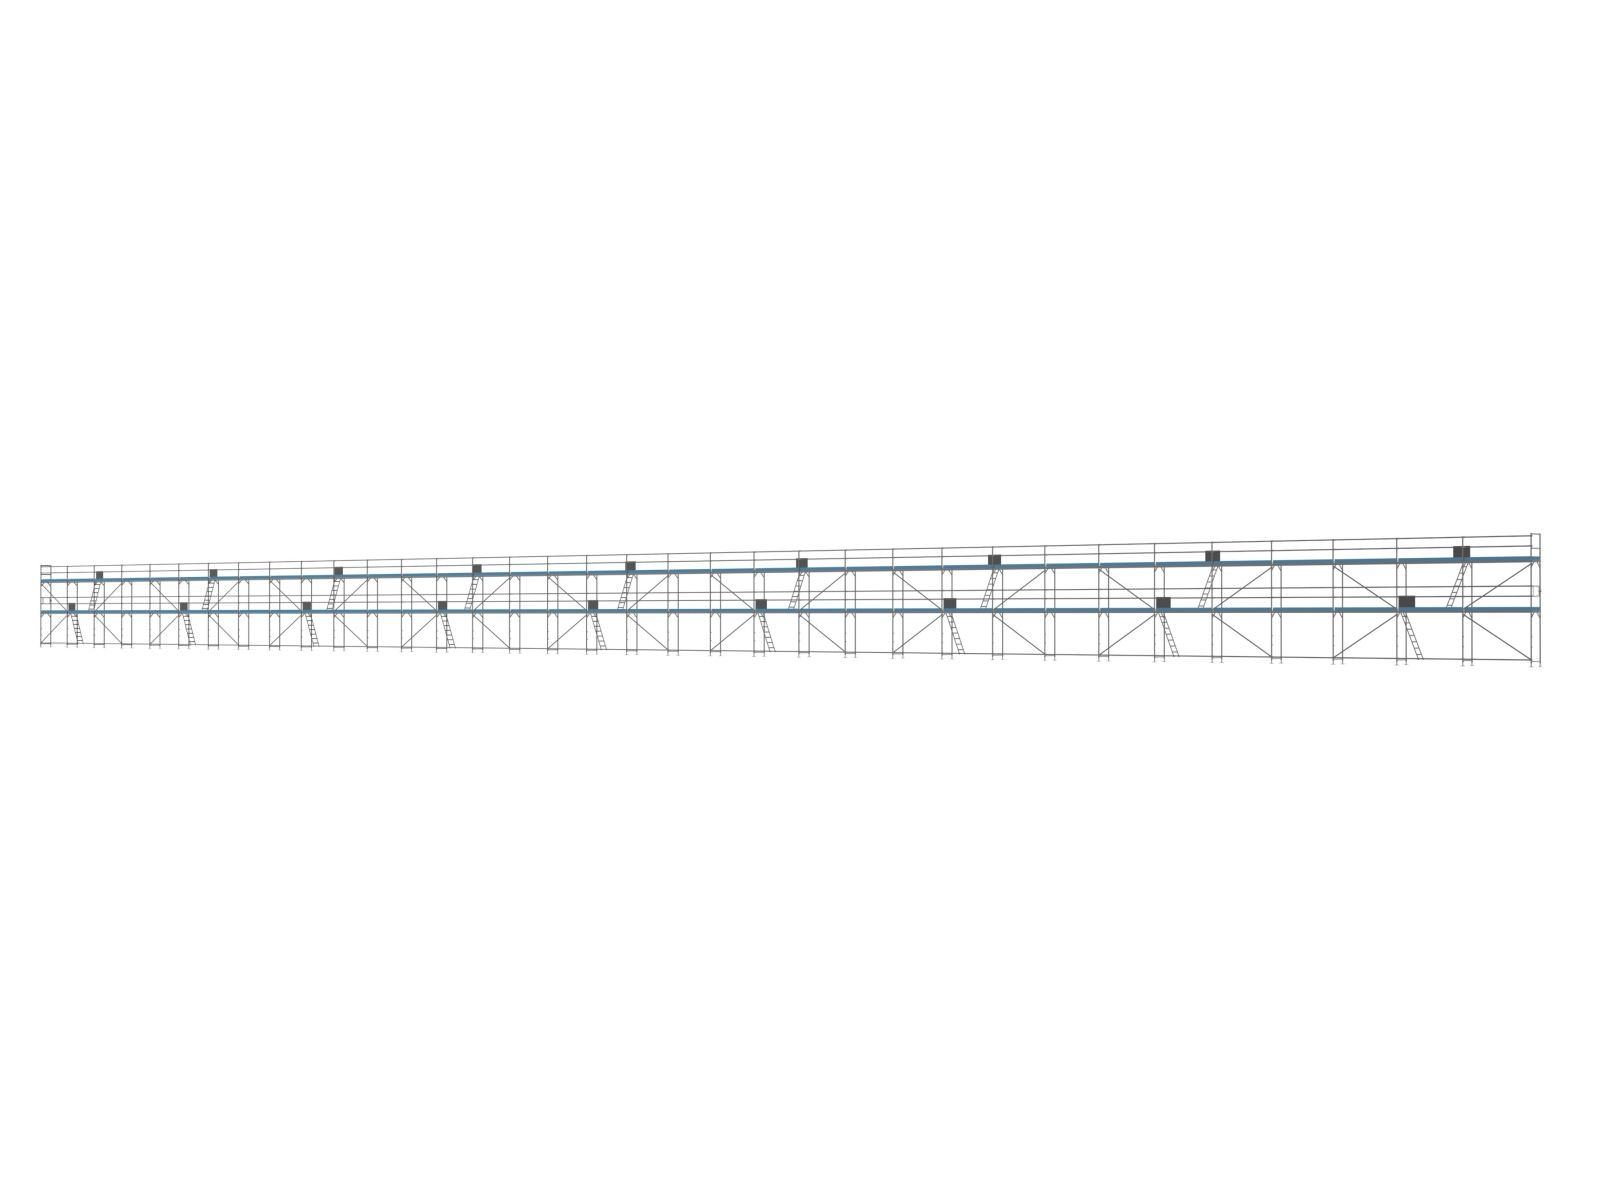 Alu Traufseitengerüst 720 qm - 3,0 m Felder - 120 m lang - 6 m Arbeitshöhe - Komplettpaket